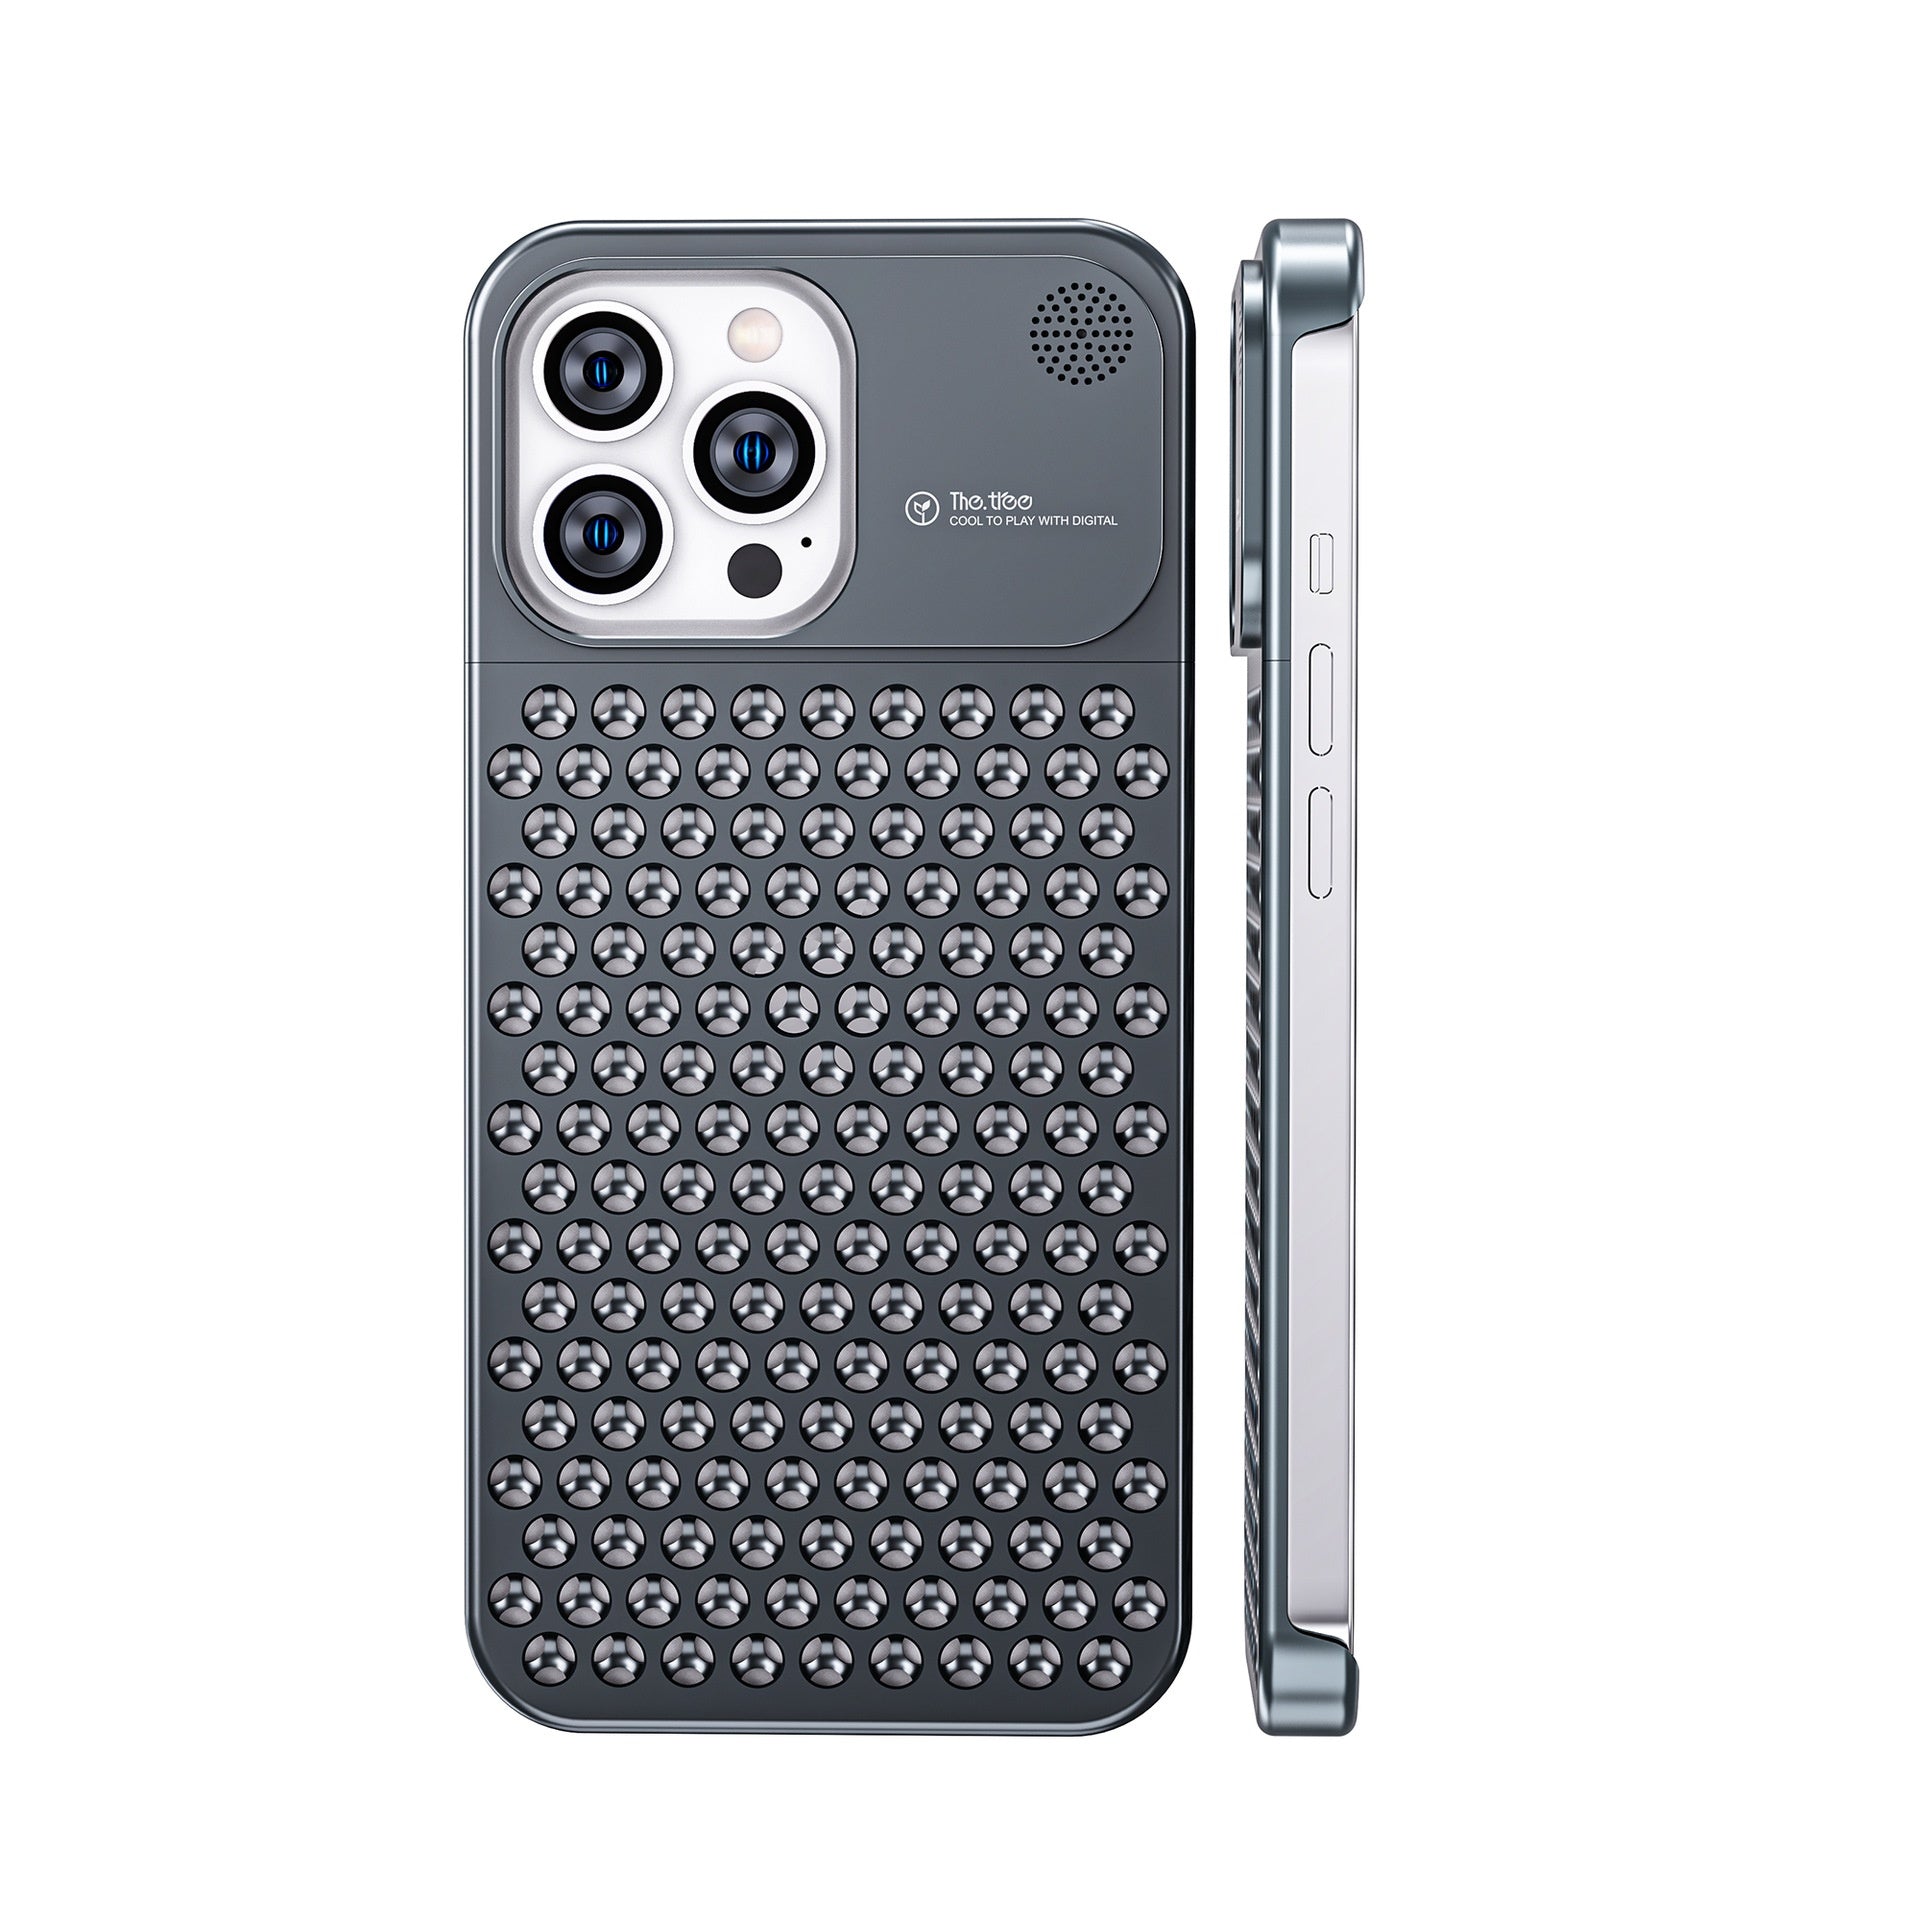 Iphone Case aus robusten Aluminium